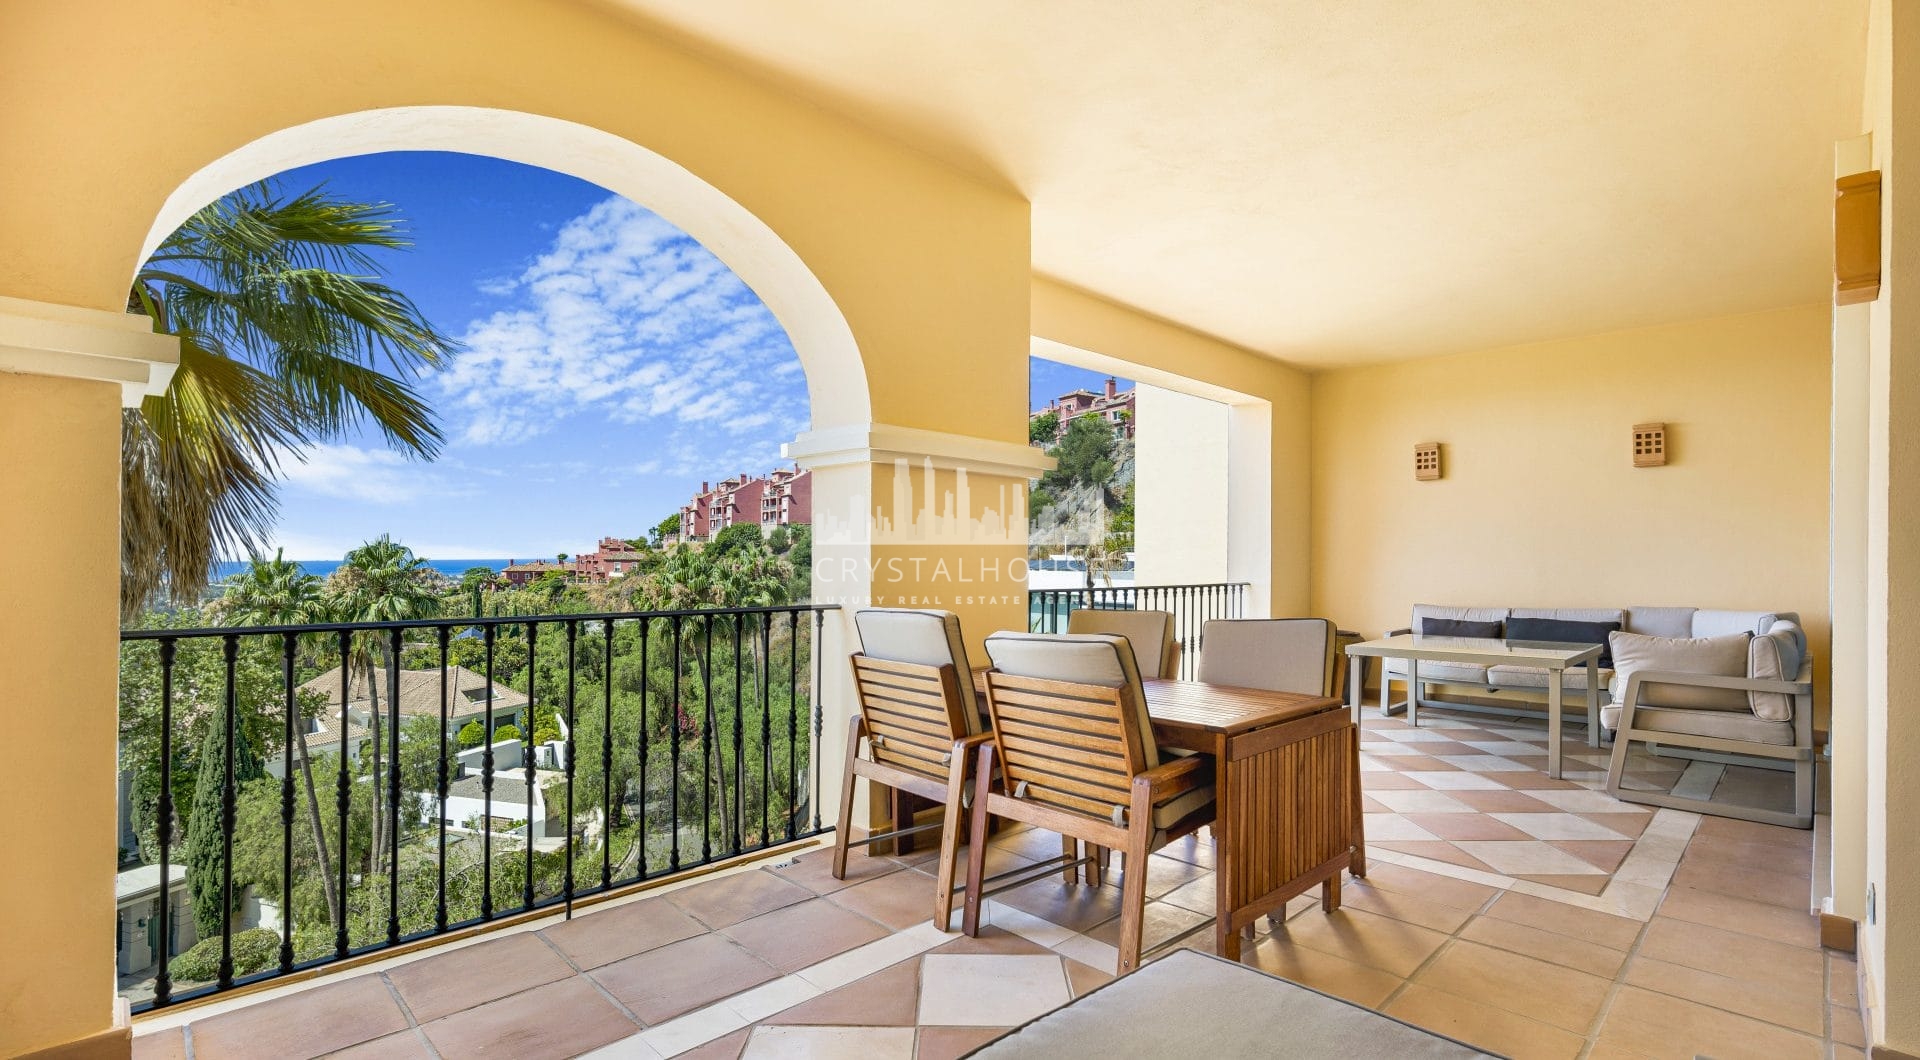 Wspaniałe dwupokojowe, południowe mieszkanie w zamkniętym kompleksie mieszkaniowym Buenavista II, La Quinta, z panoramicznym widokiem na morze